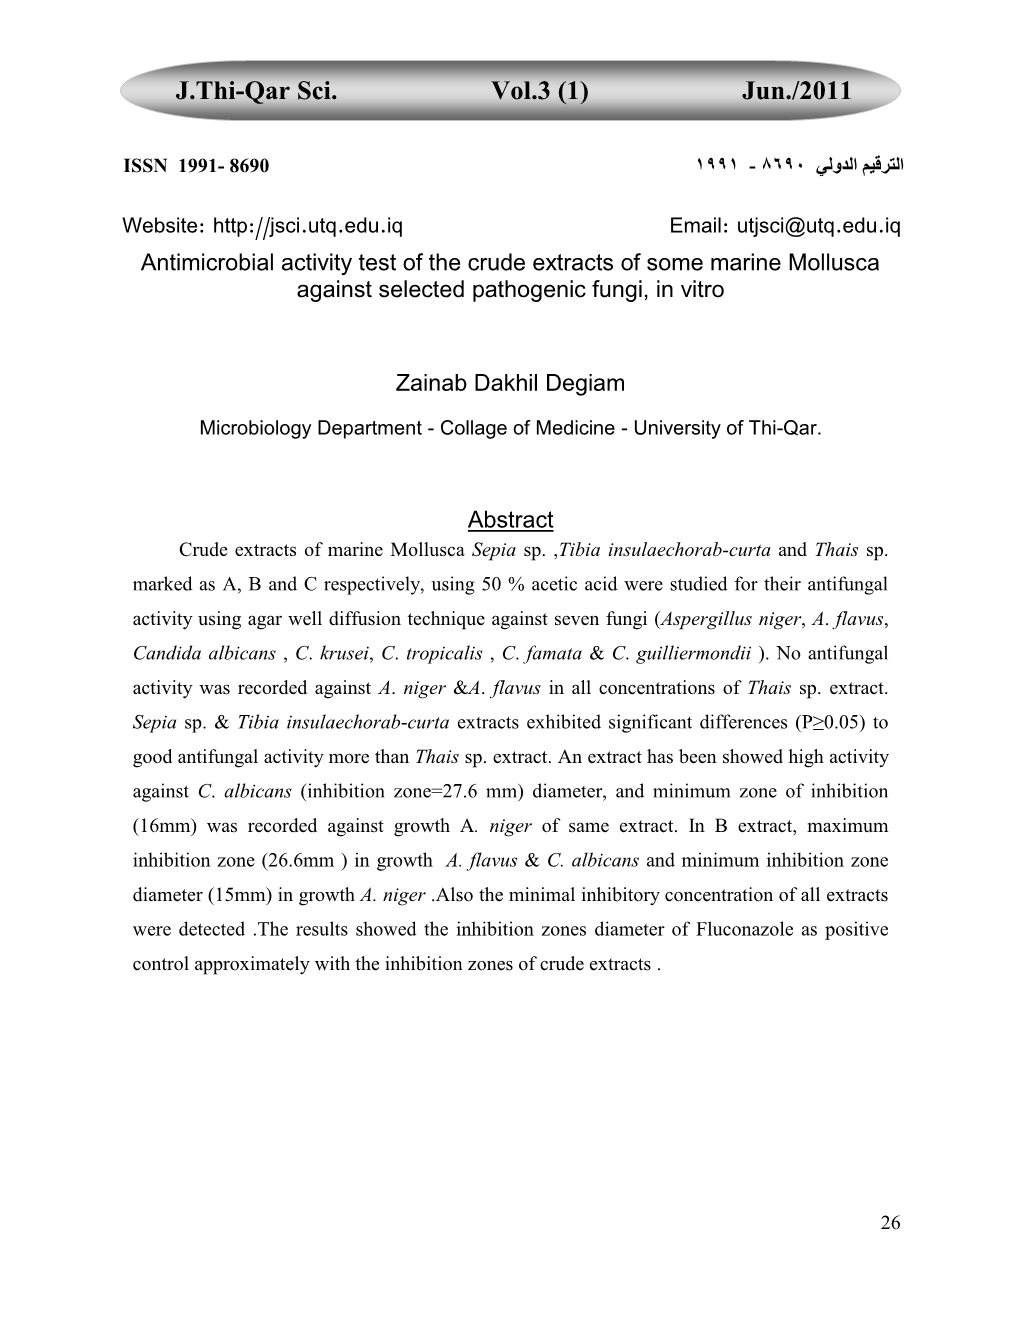 J.Thi-Qar Sci. Vol.3 (1) Jun./2011